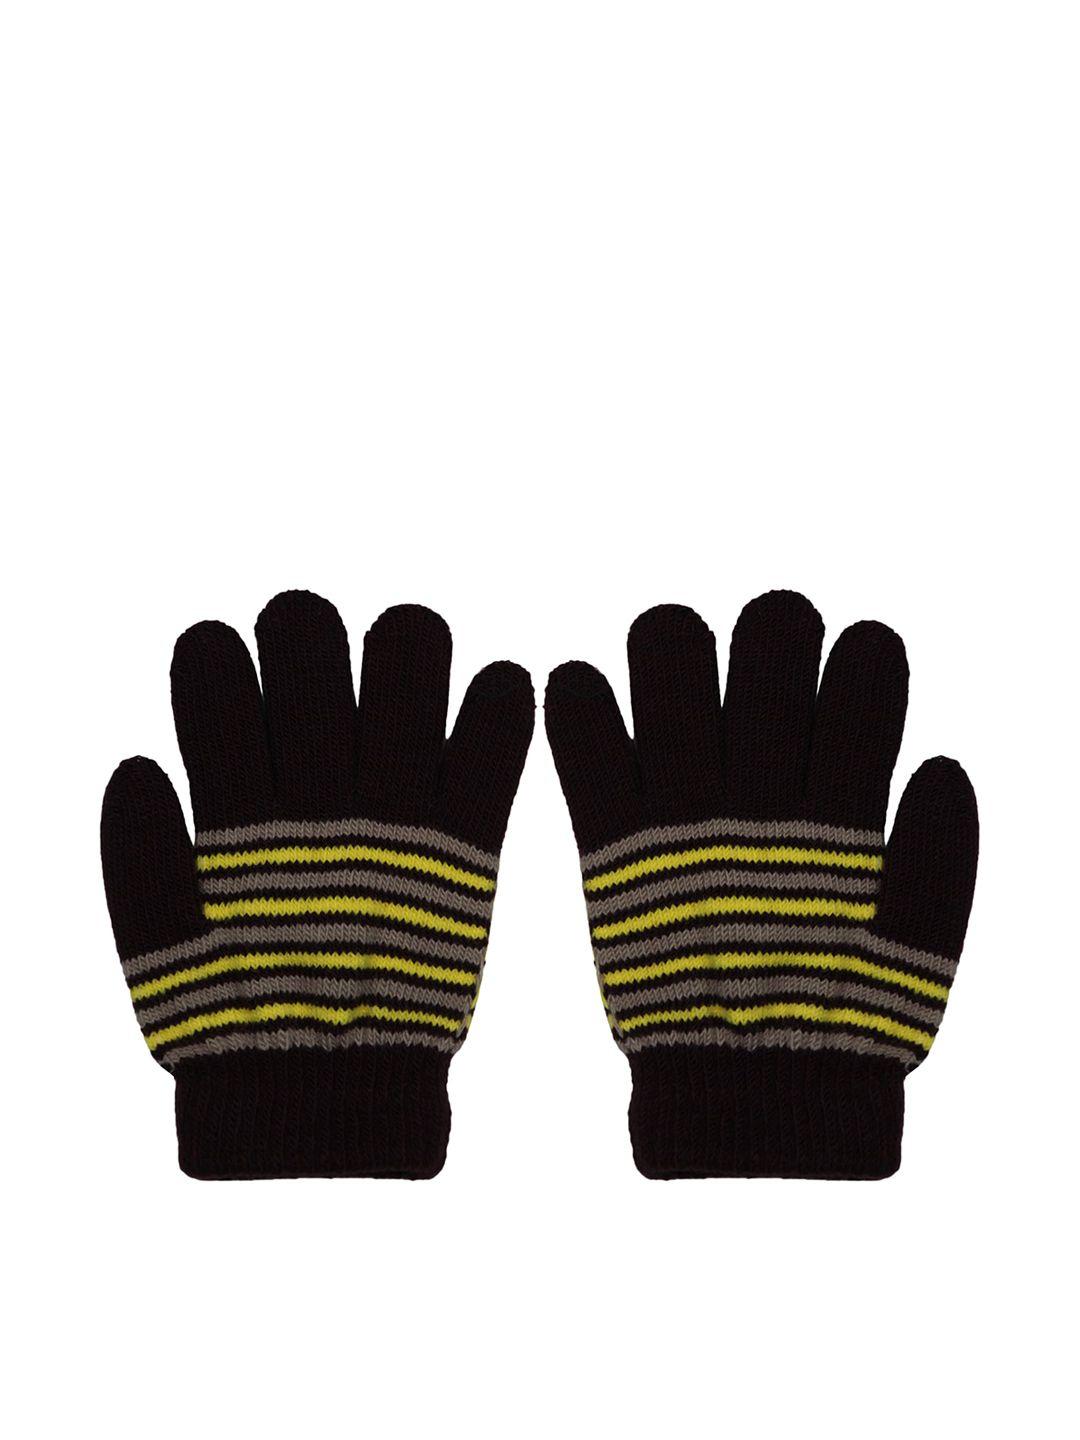 baesd kids striped full finger woolen knitted winter gloves